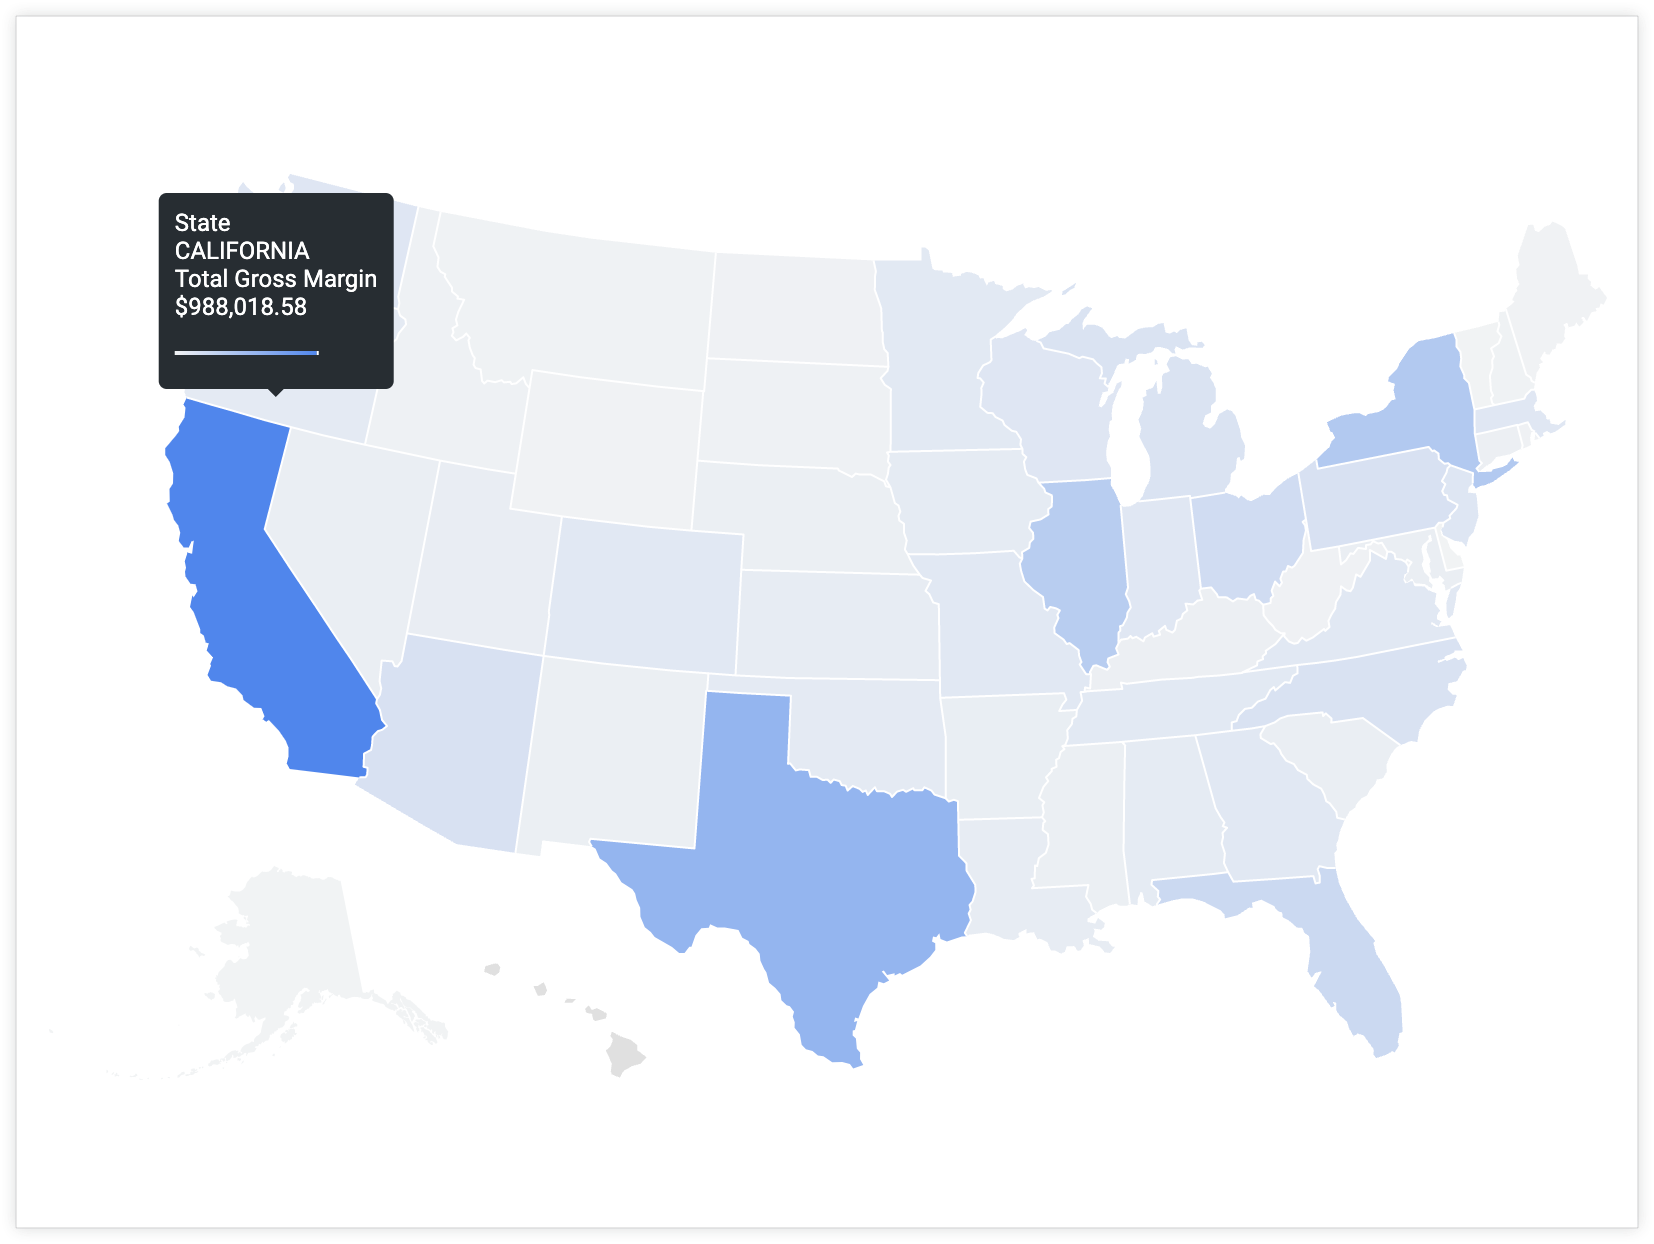 Um usuário passa o cursor sobre a Califórnia para mostrar uma dica com o valor do estado "Califórnia" e o valor de margem bruta total "US$ 988.018,58".